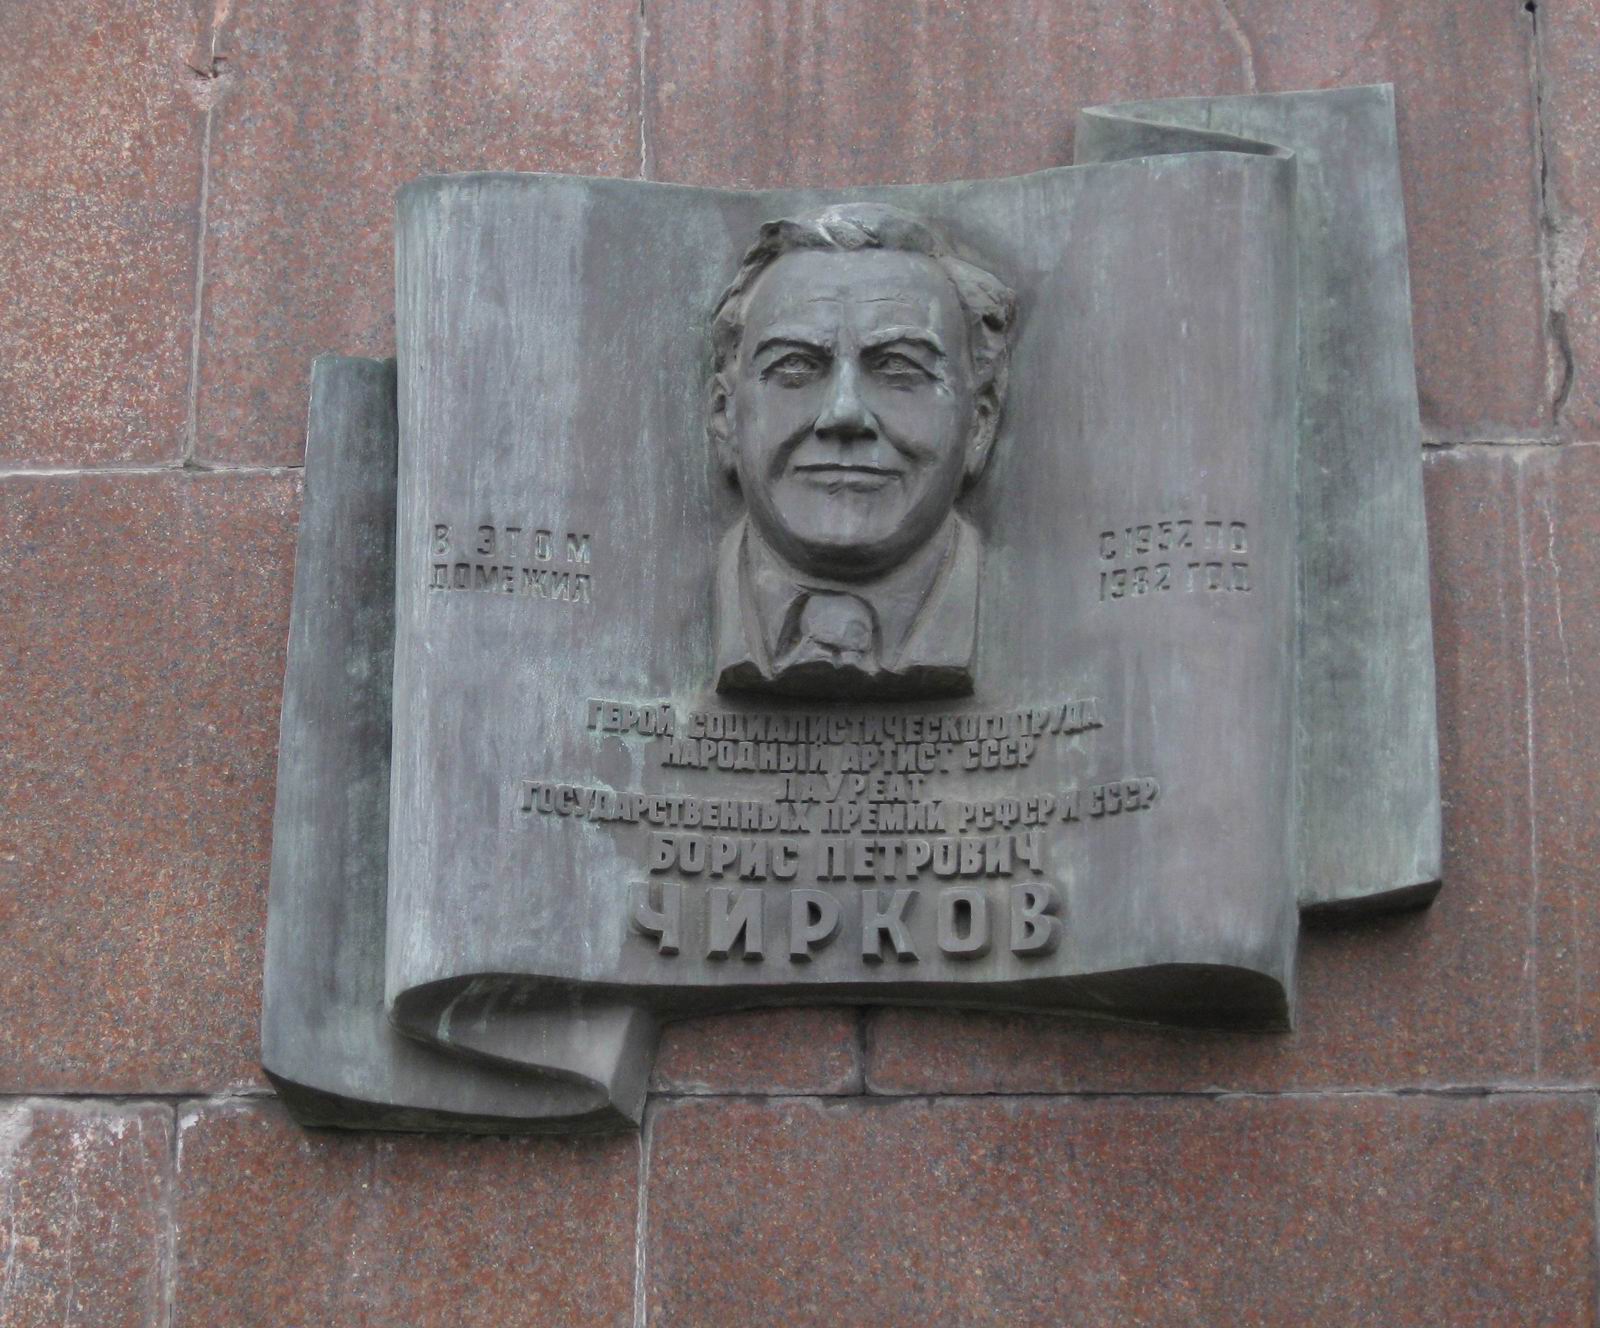 Мемориальная доска Чиркову Б.П. (1901–1982), ск. М.А.Шмаков, арх. В.А.Климов, на Садовой-Спасской улице, дом 21, открыта 12.10.1984.